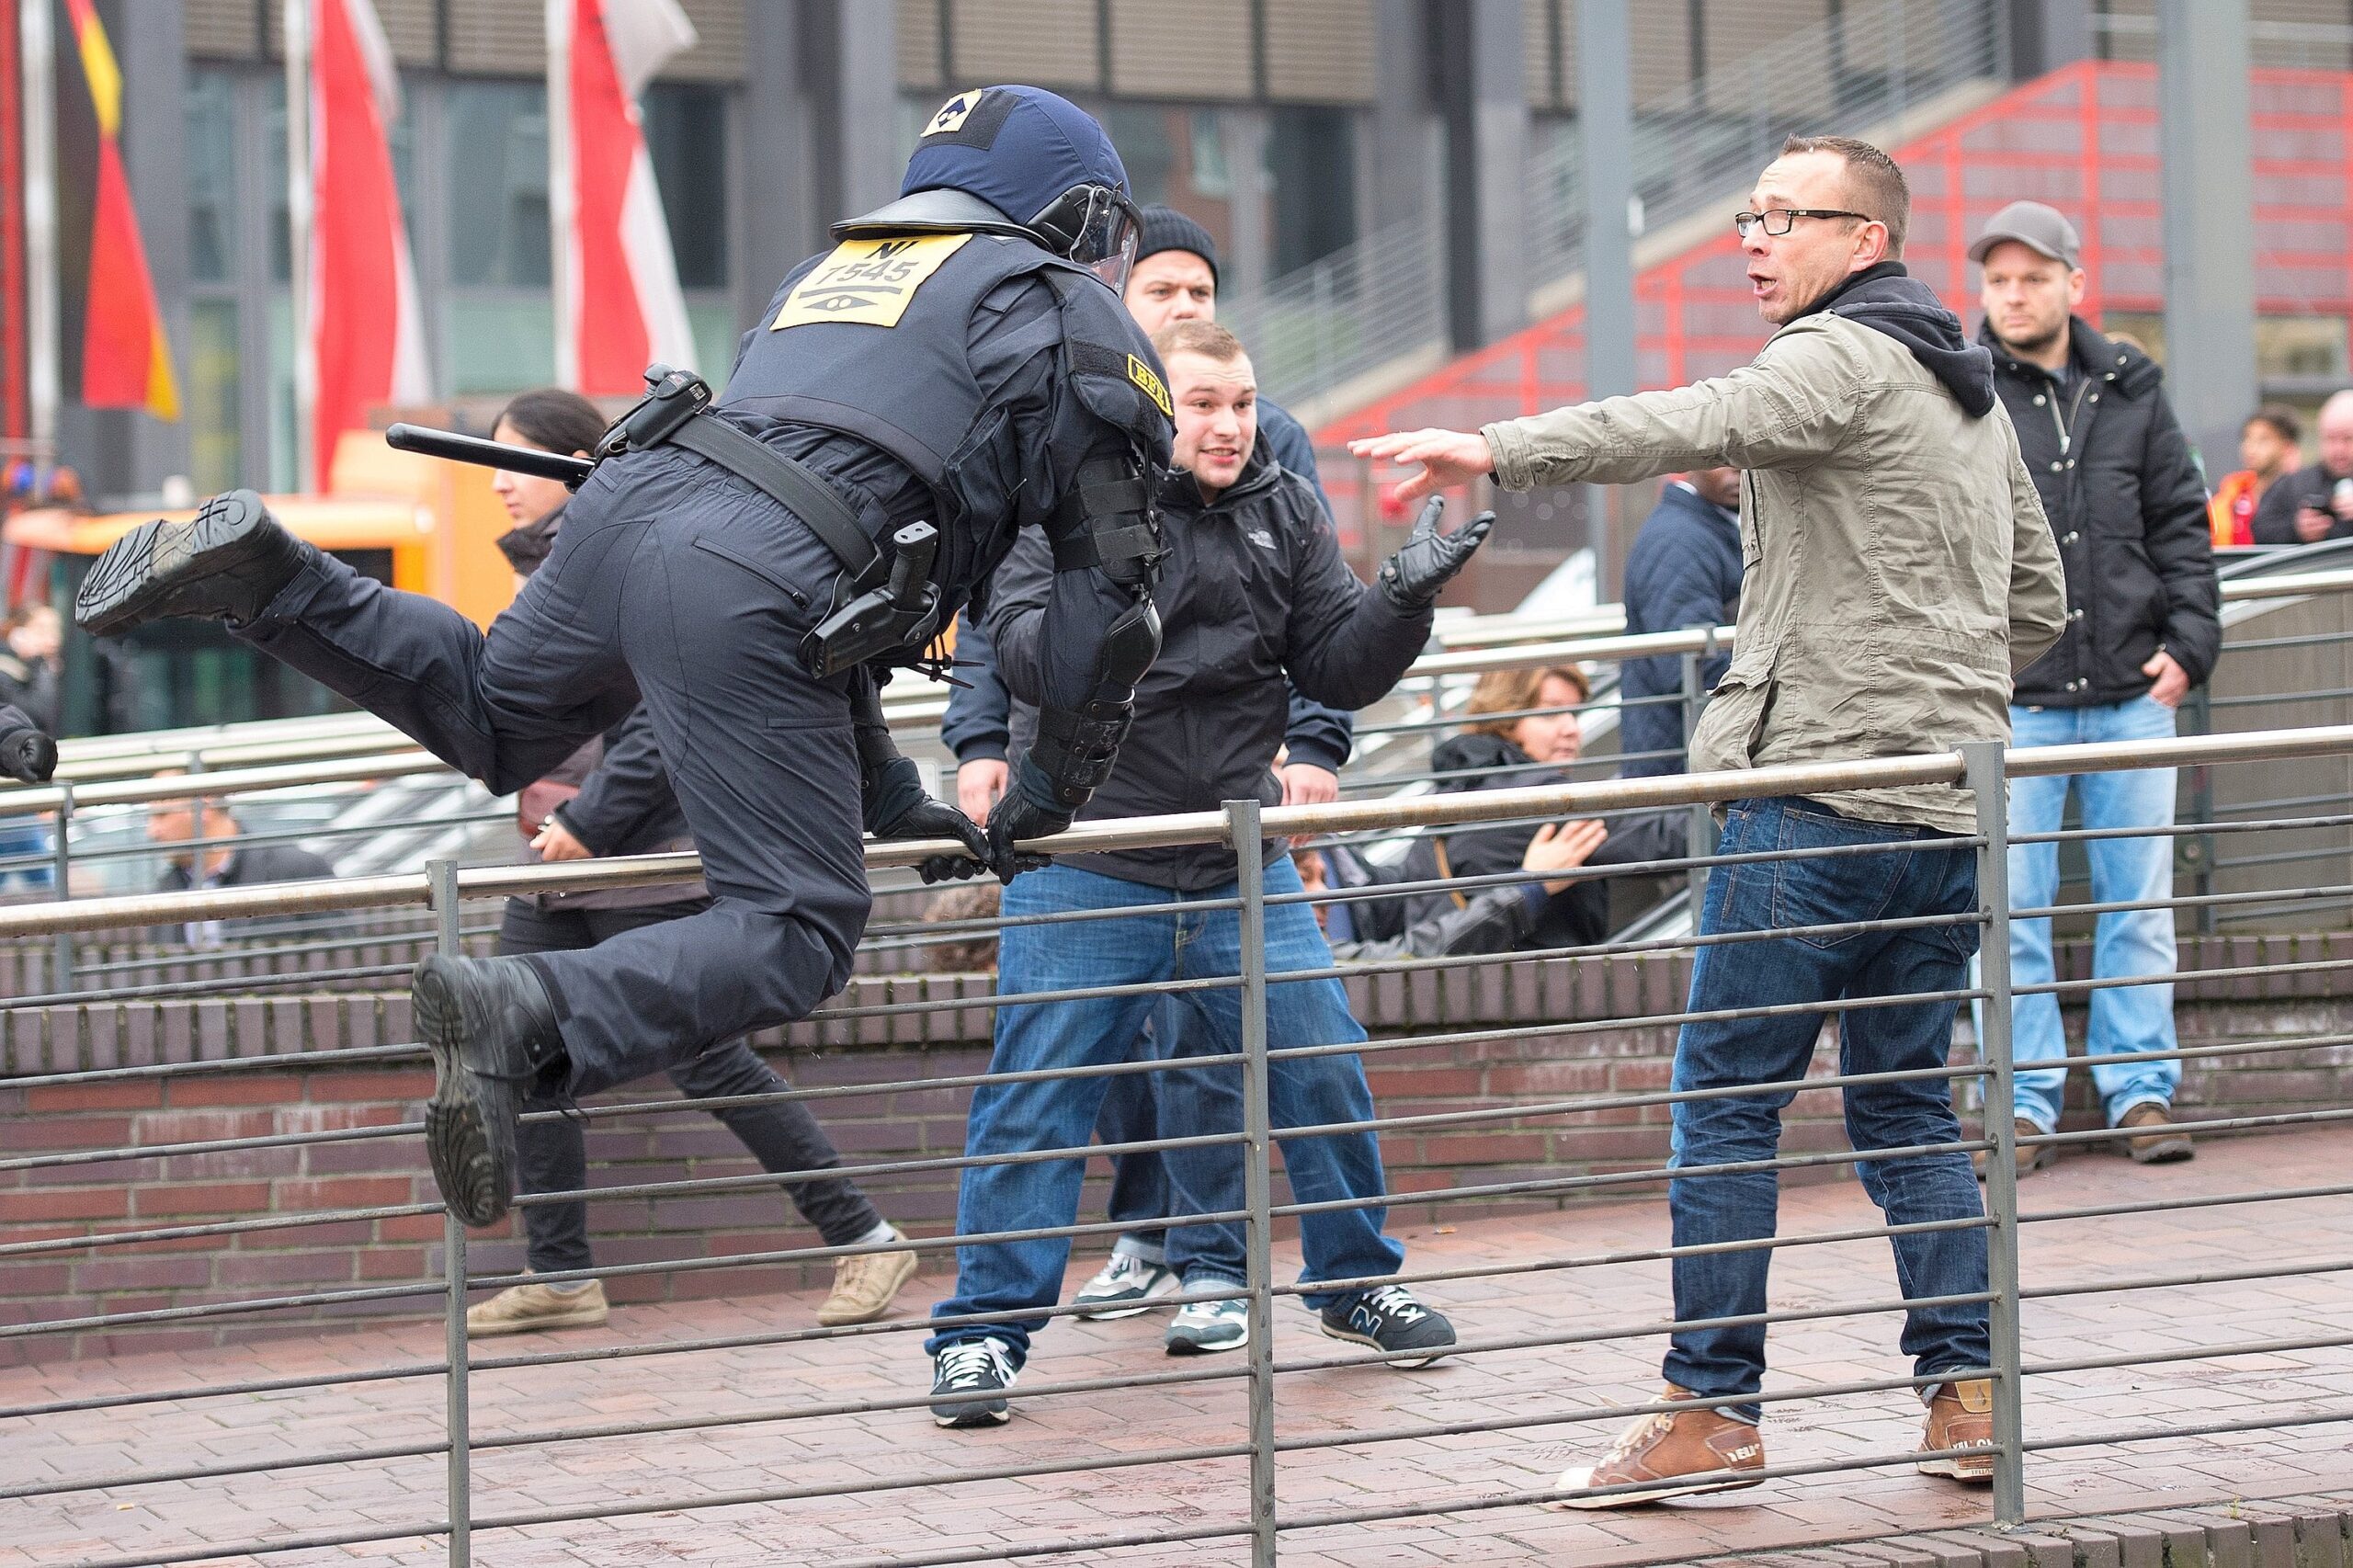 Ein Polizist springt am 25.10.2015 in Köln (Nordrhein-Westfalen) über ein Geländer. Die Gruppierung Hooligans gegen Salafisten (Hogesa) demonstriert in Köln, während mehrere Gegendemos und Veranstaltungen angemeldet sind. Die Polizei rechnet mit bis zu 23.000 Teilnehmern insgesamt. Foto: Marius Becker/dpa +++(c) dpa - Bildfunk+++